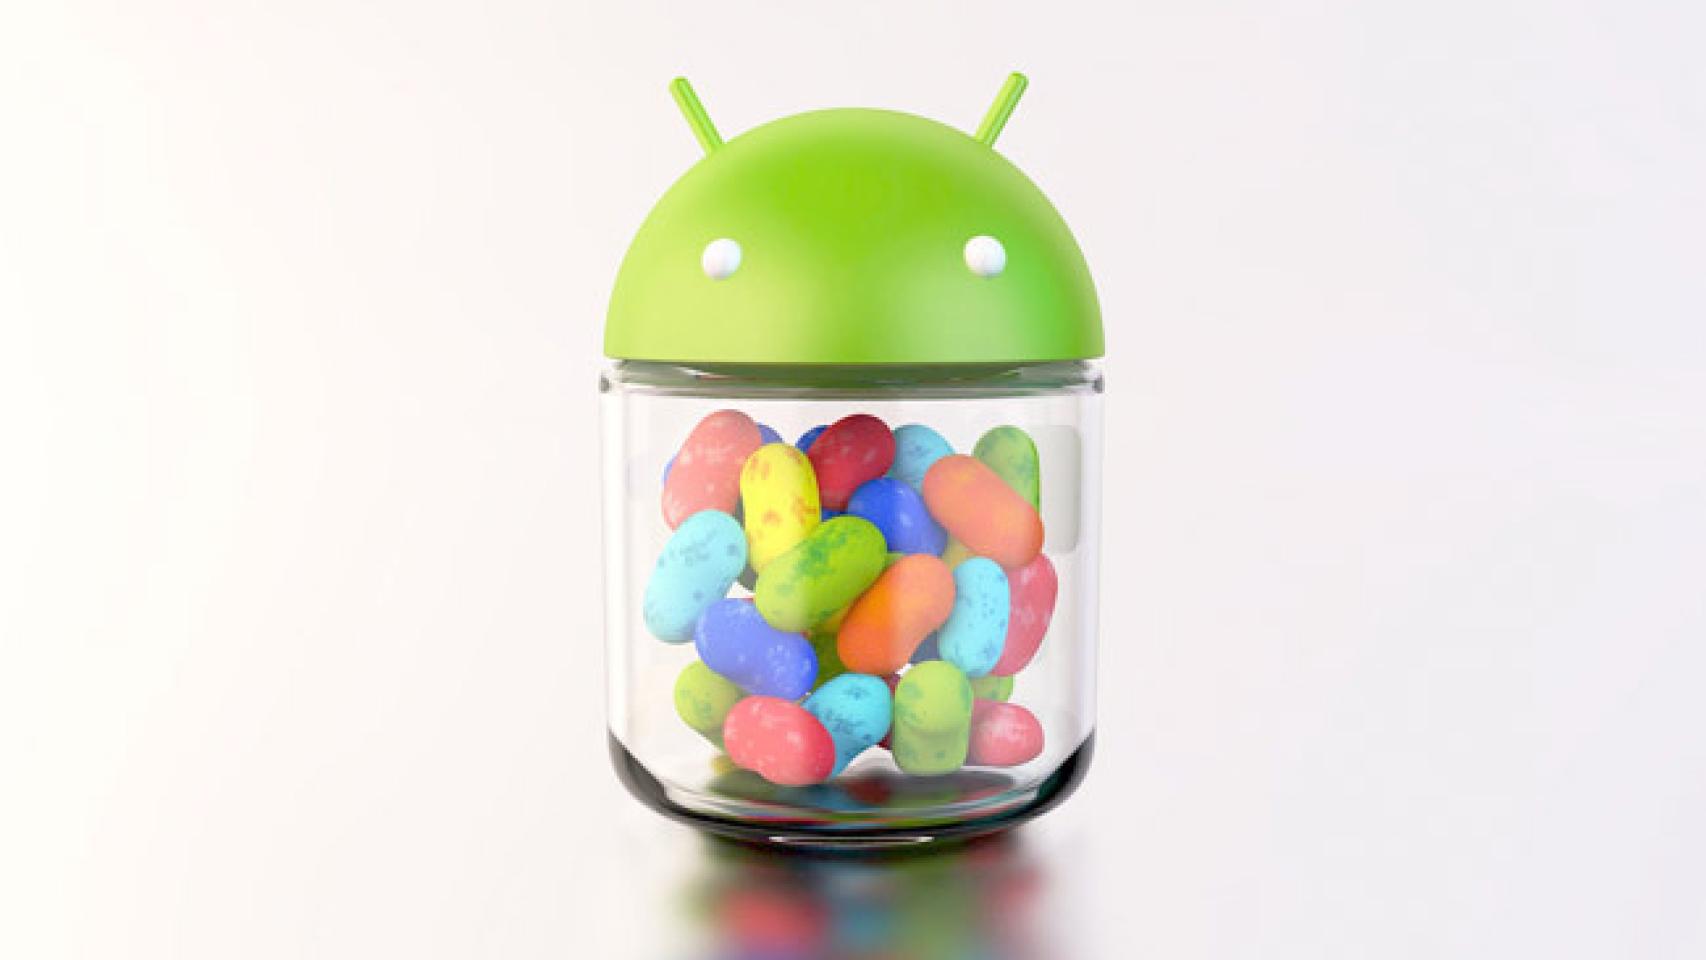 Dale un toque de Jelly Bean a tu Android con su launcher y fondos originales